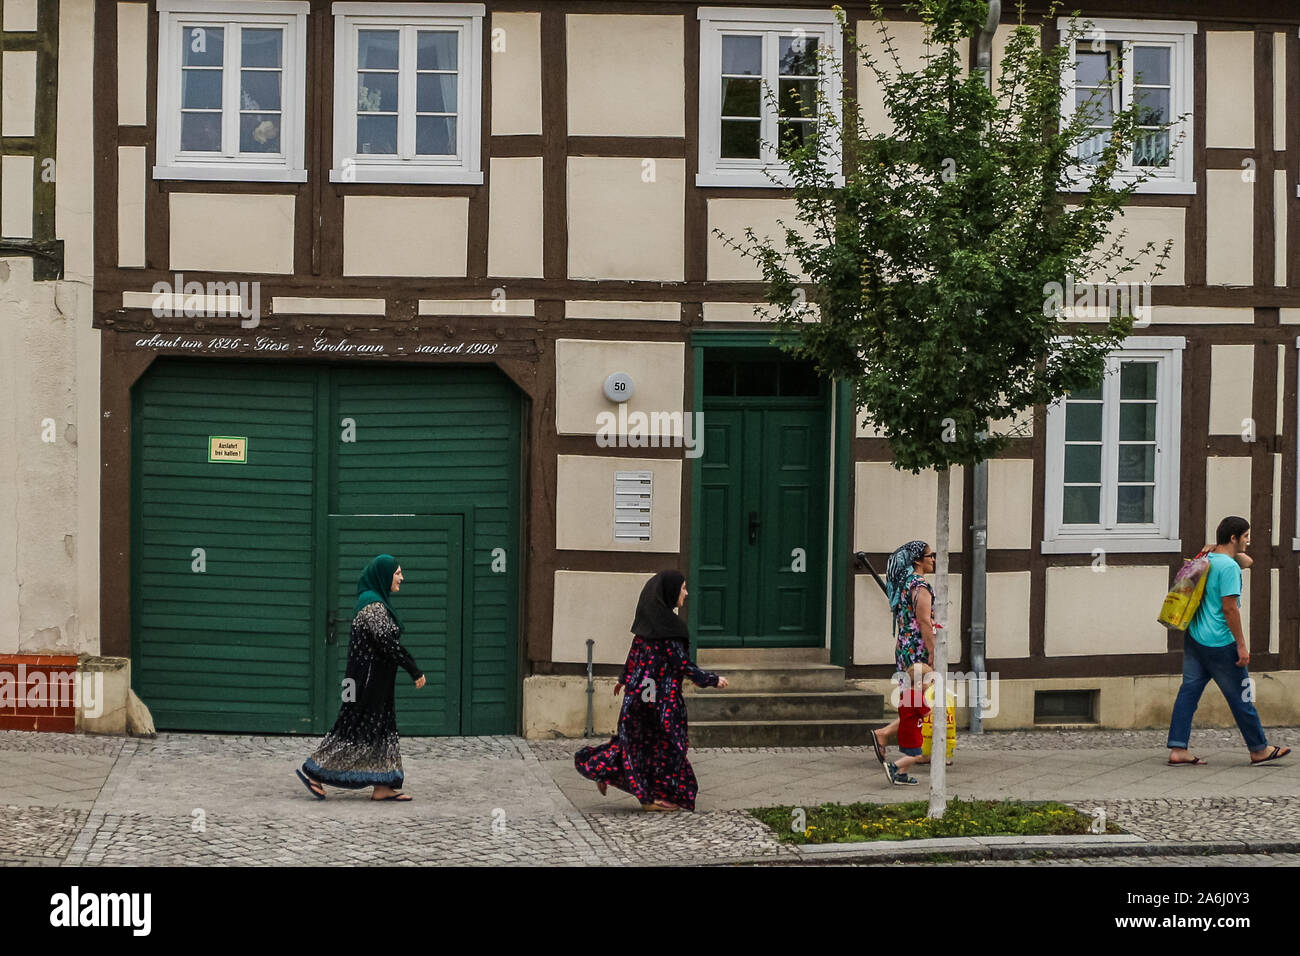 Muslimische Frauen zu Fuß entlang der alten Stadt Gebäude sind in Kyritz, Brandenburg, Deutschland am 1. August 2019 © Michal Fludra/Alamy Live Nachrichten gesehen Stockfoto